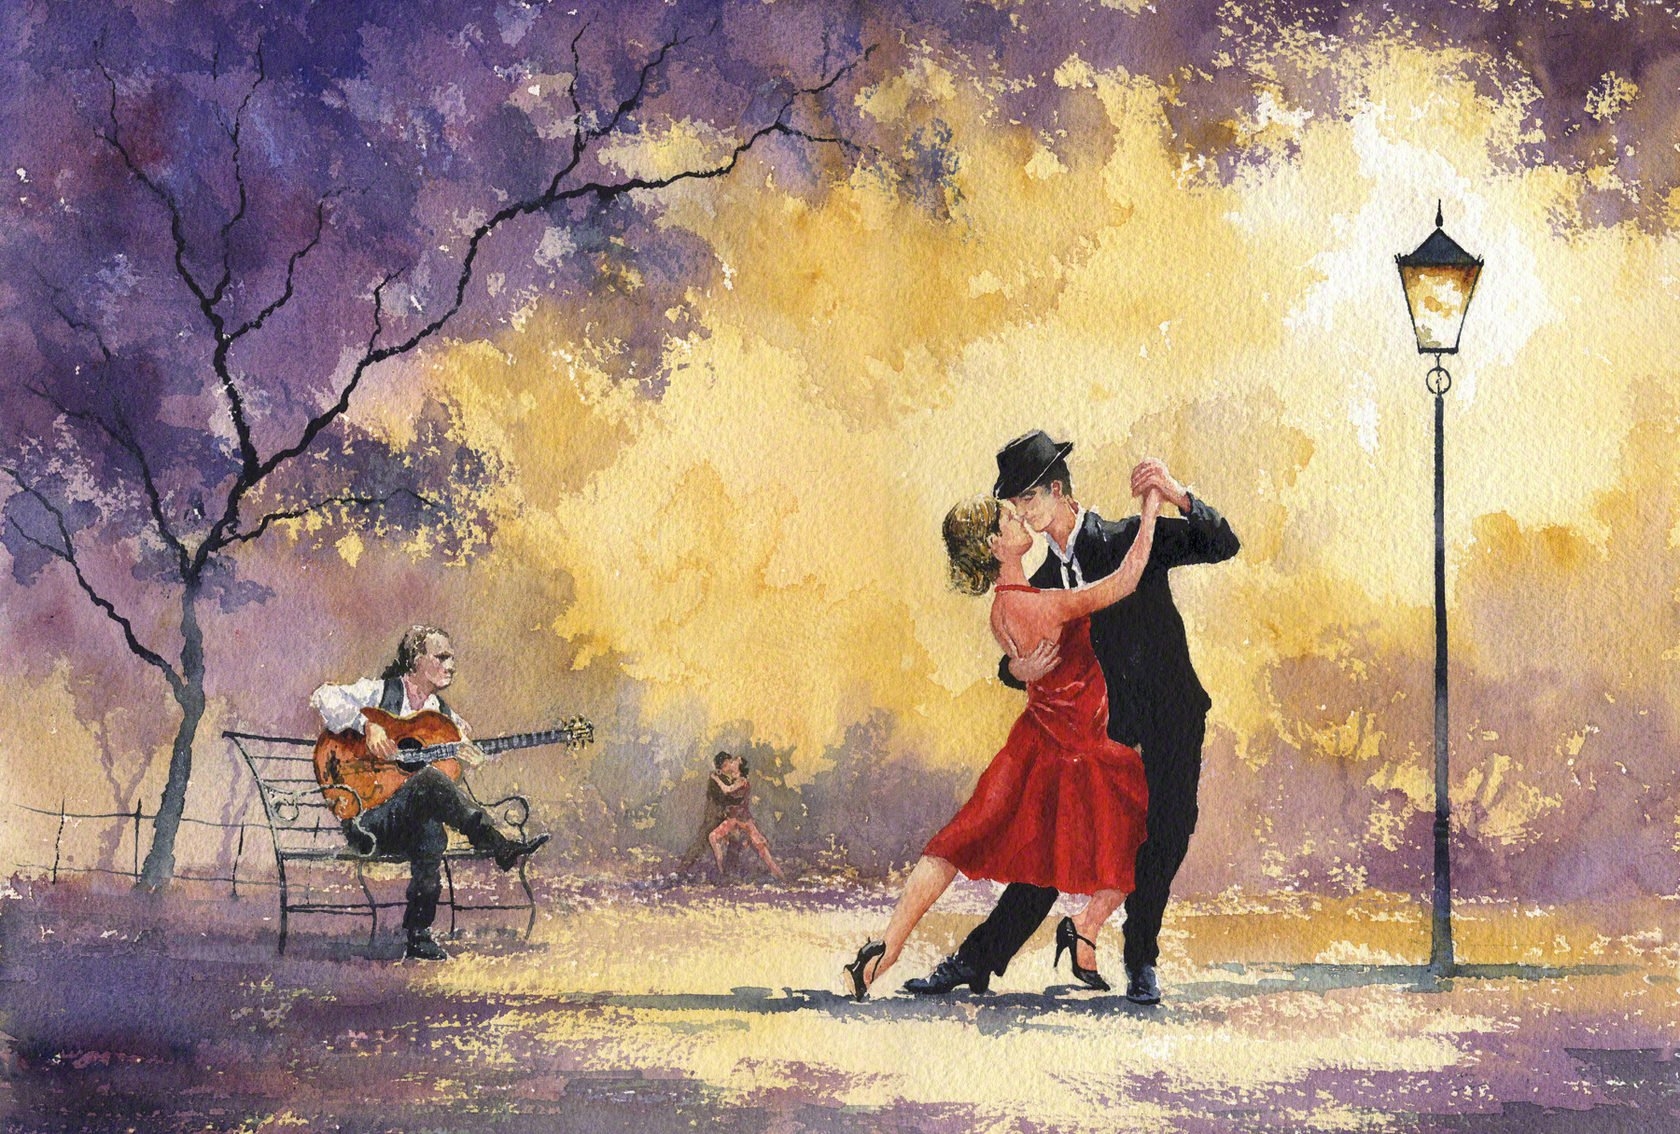 Песня под танго. Художник Карлос Тавано танго. Танец в живописи. Международный день танго.